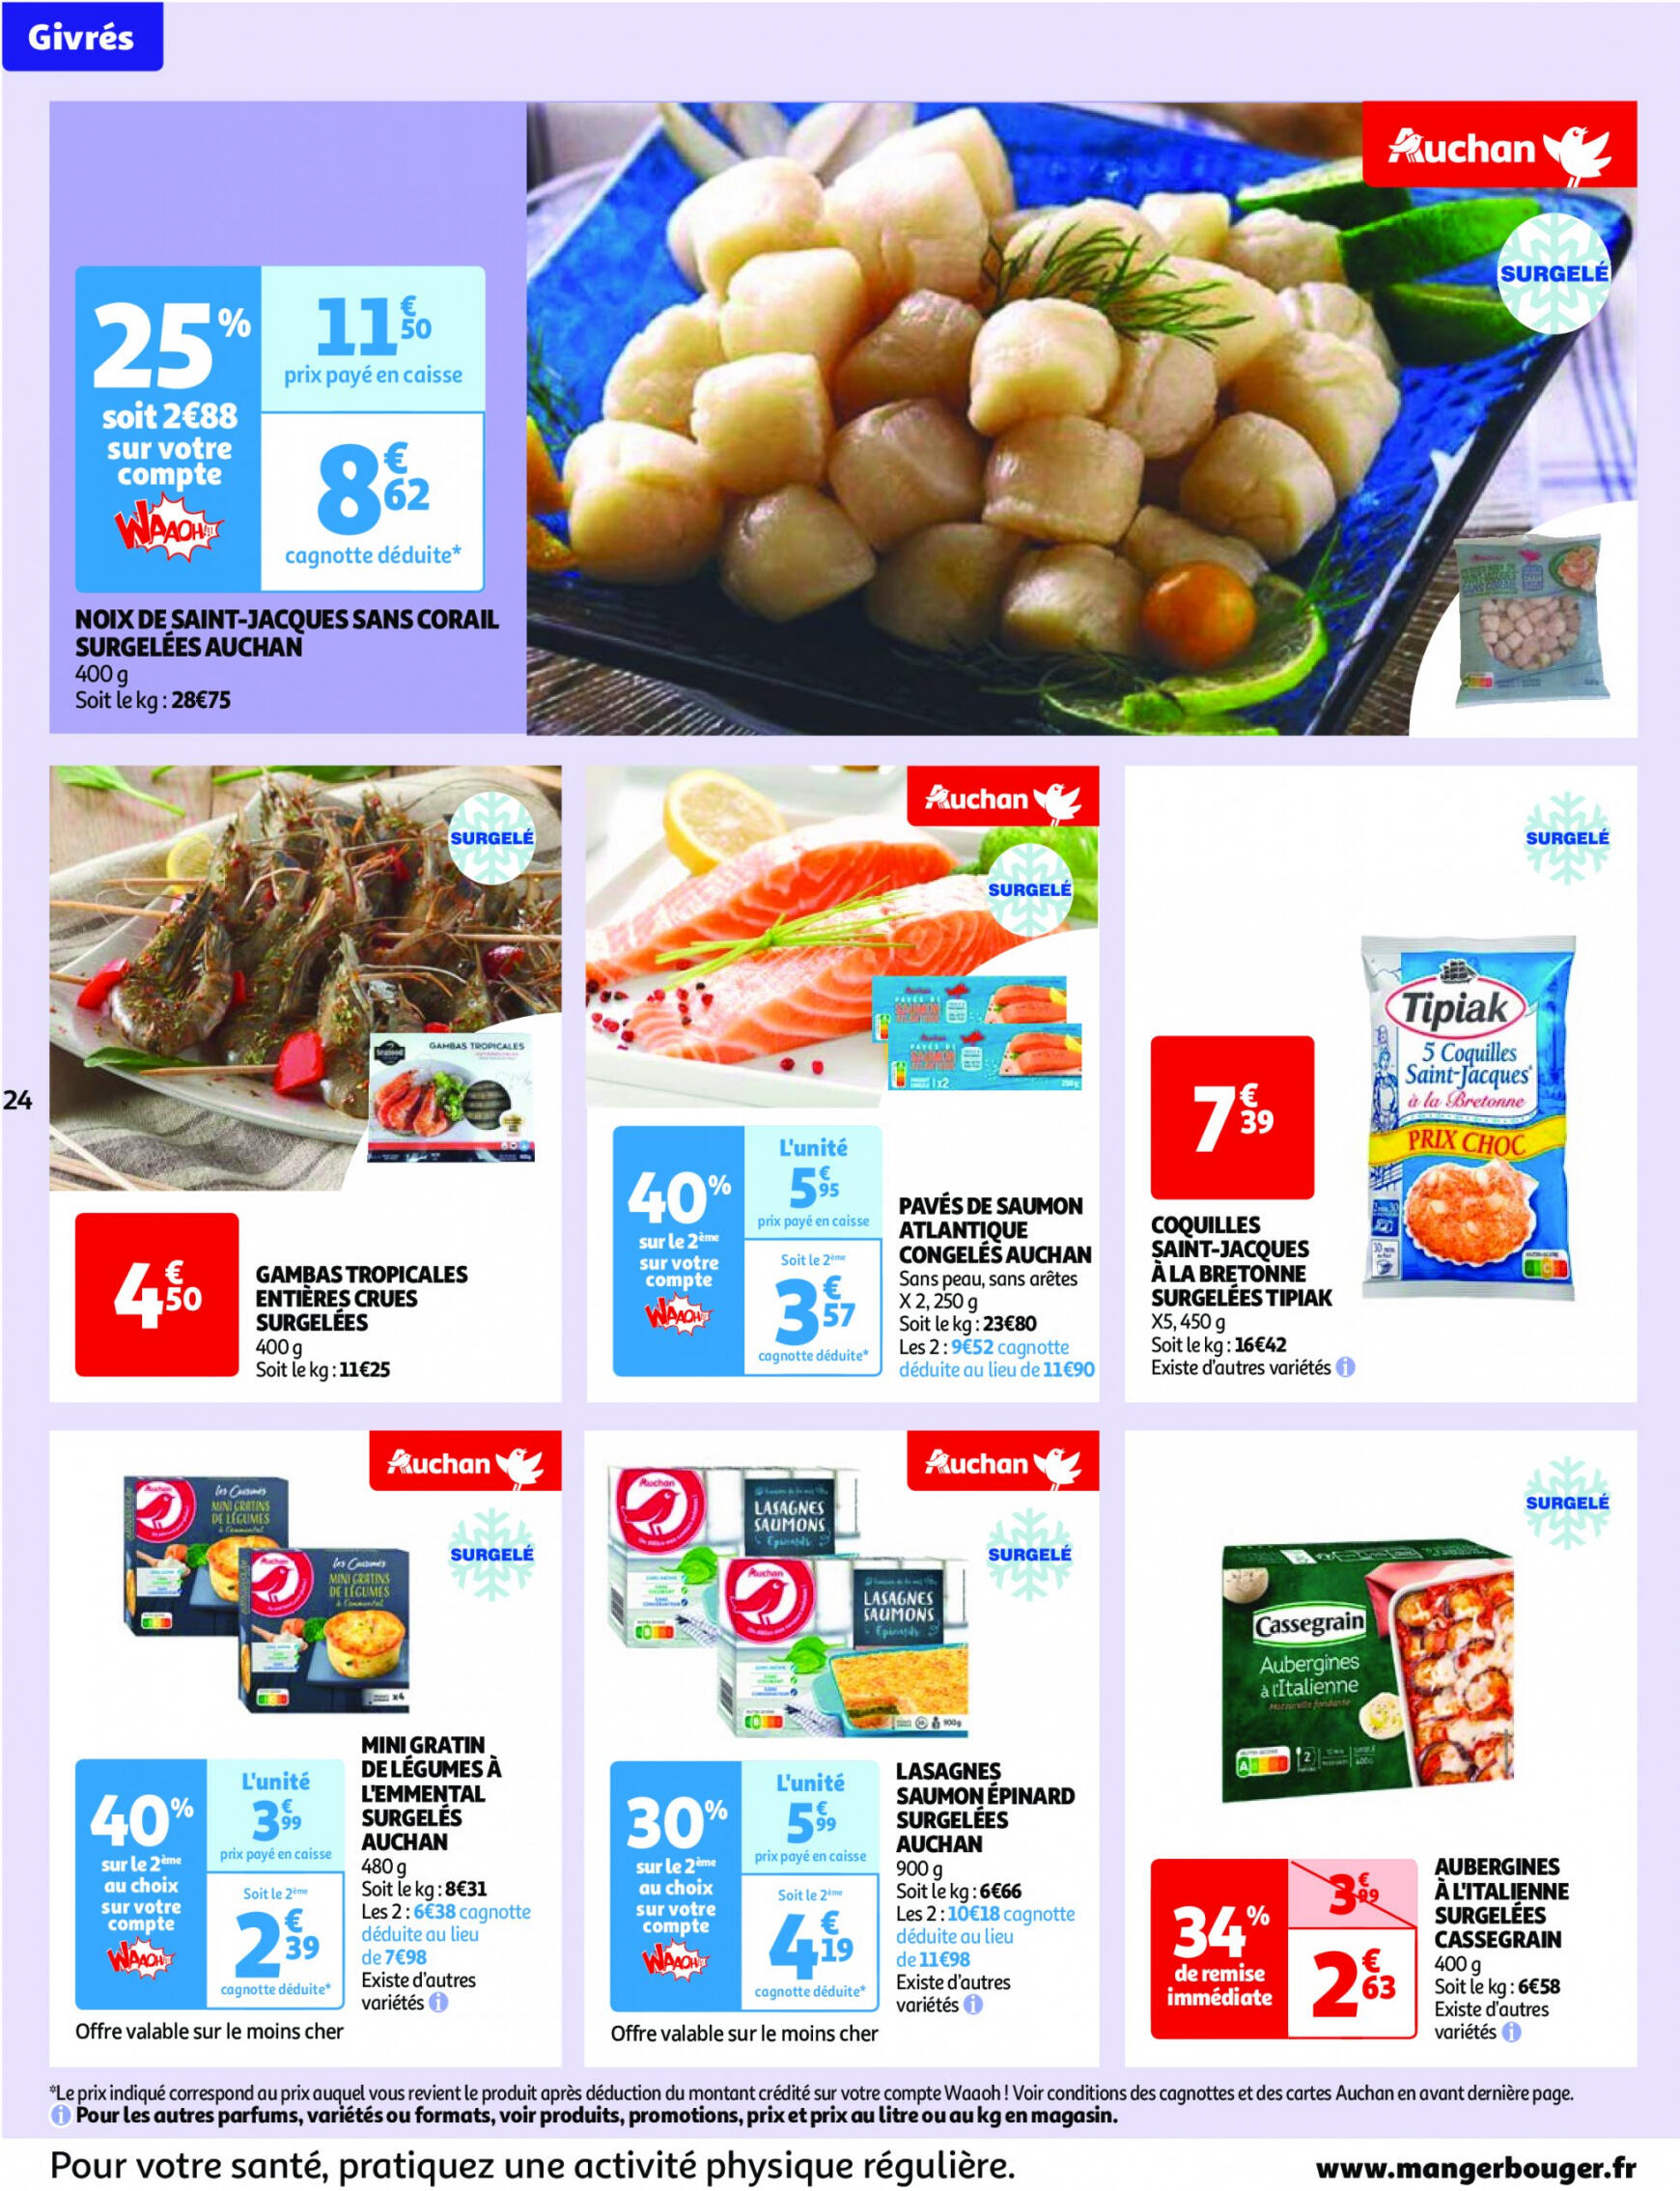 auchan - Auchan - Nos surgelés ont tout bon folder huidig 14.05. - 21.05. - page: 24